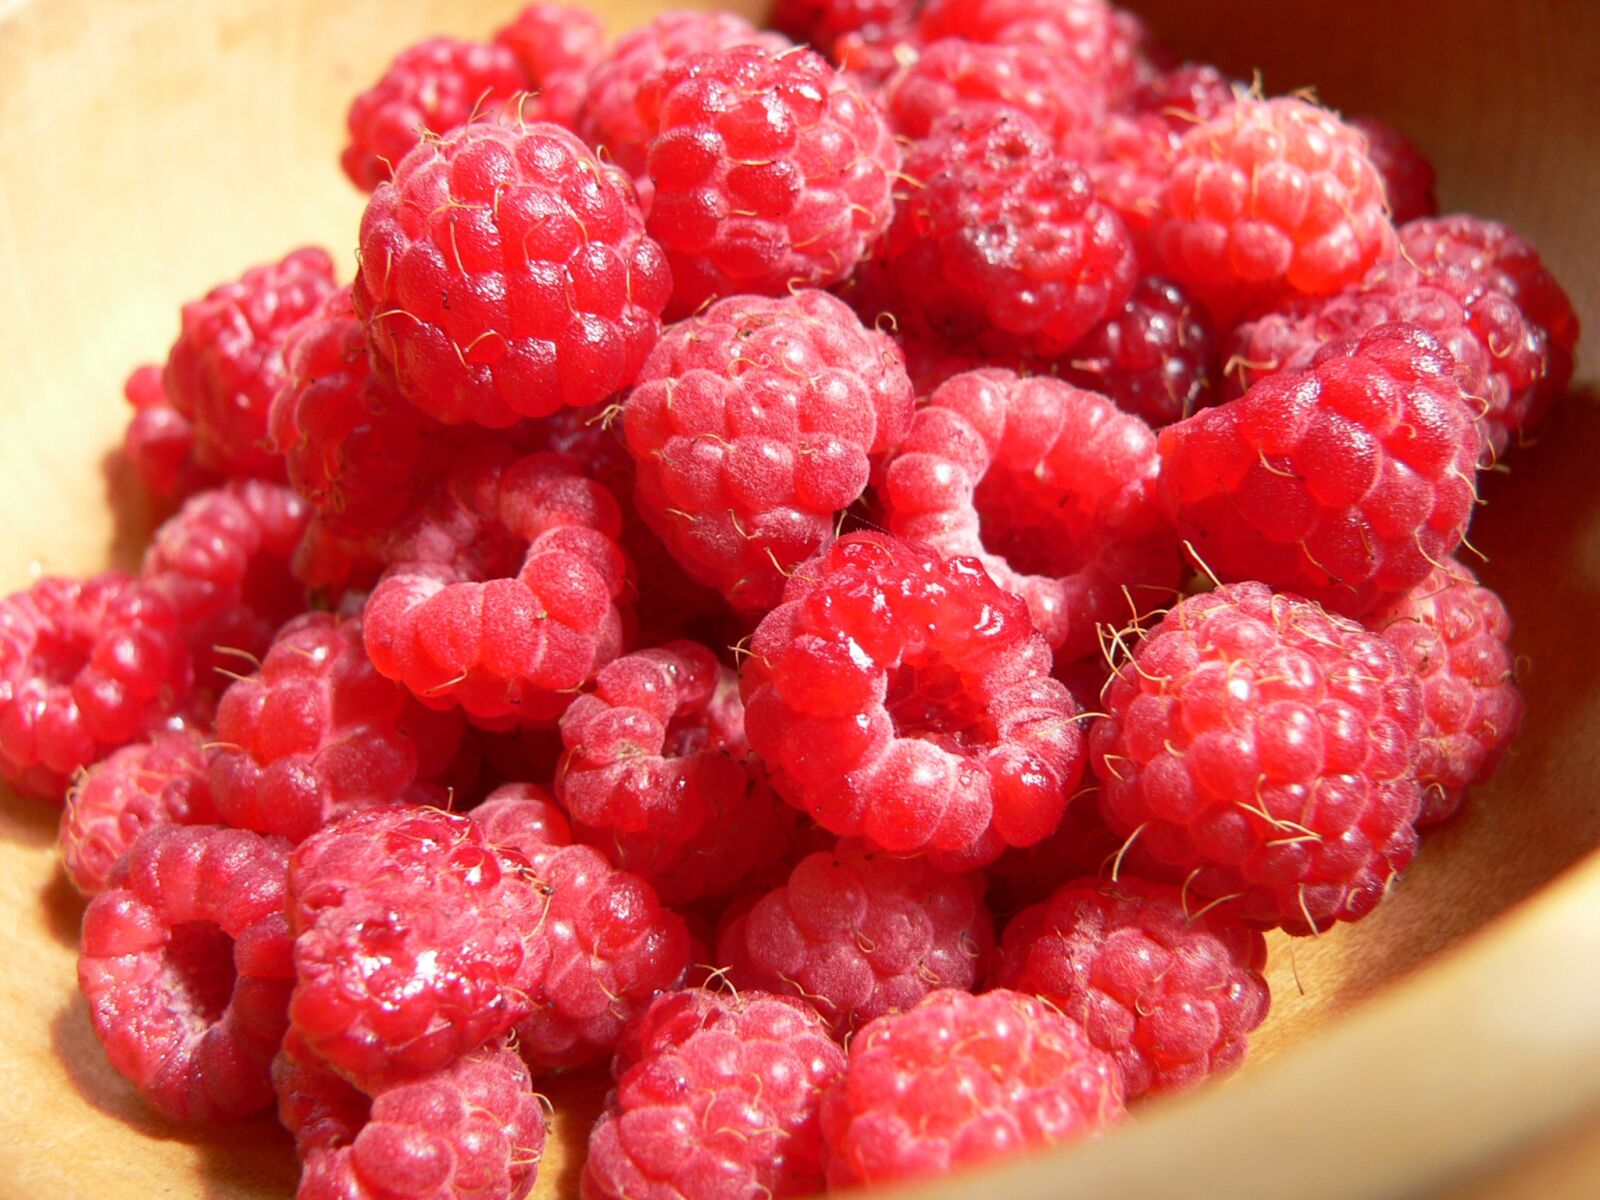 Panasonic DMC-FZ20 sample photo. Raspberries, berries, berry photography